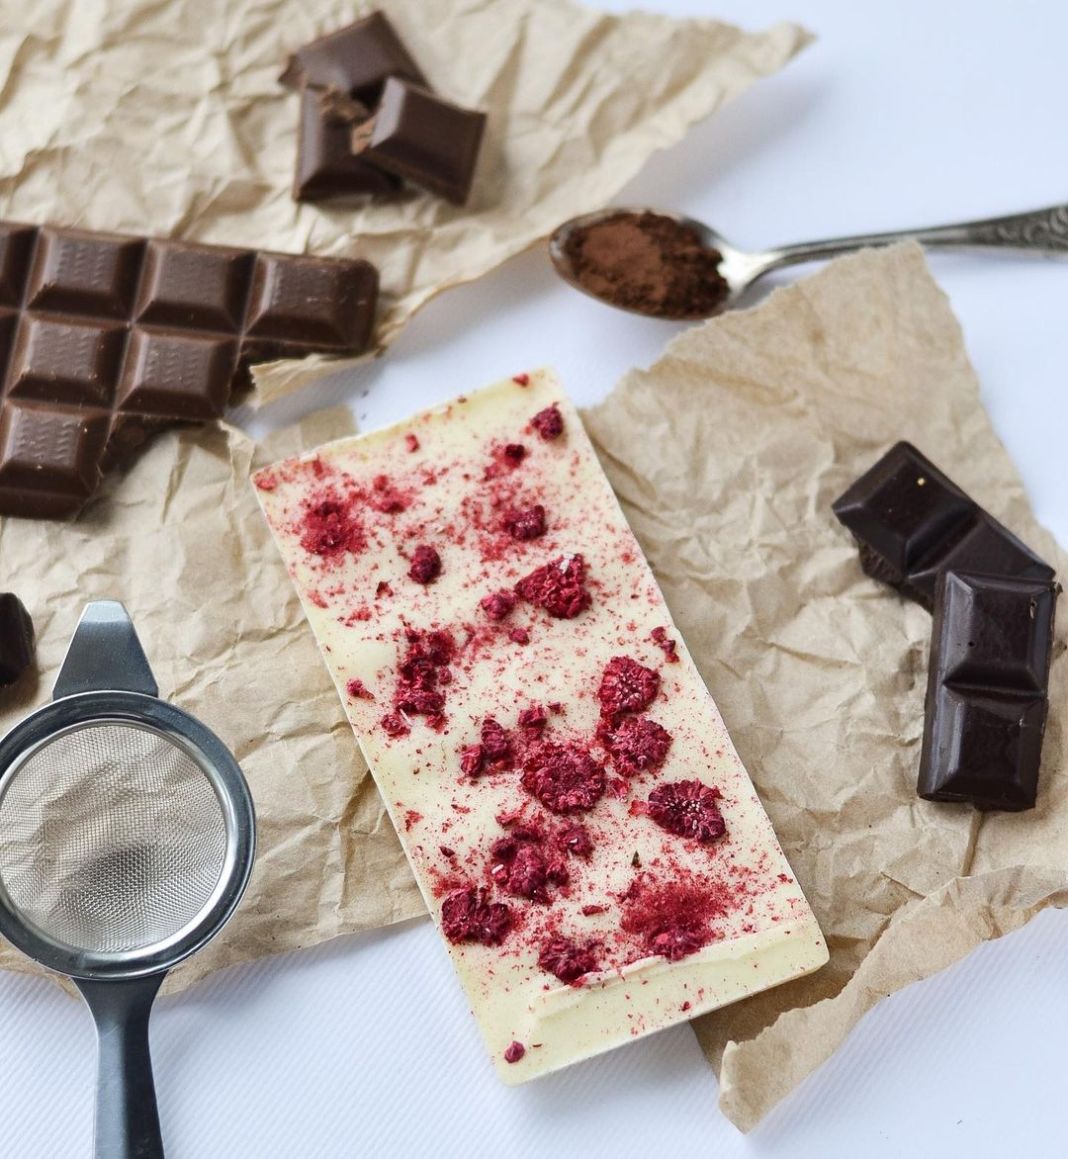 Український бренд створює шоколад із інгредієнту для бальзамування мумій